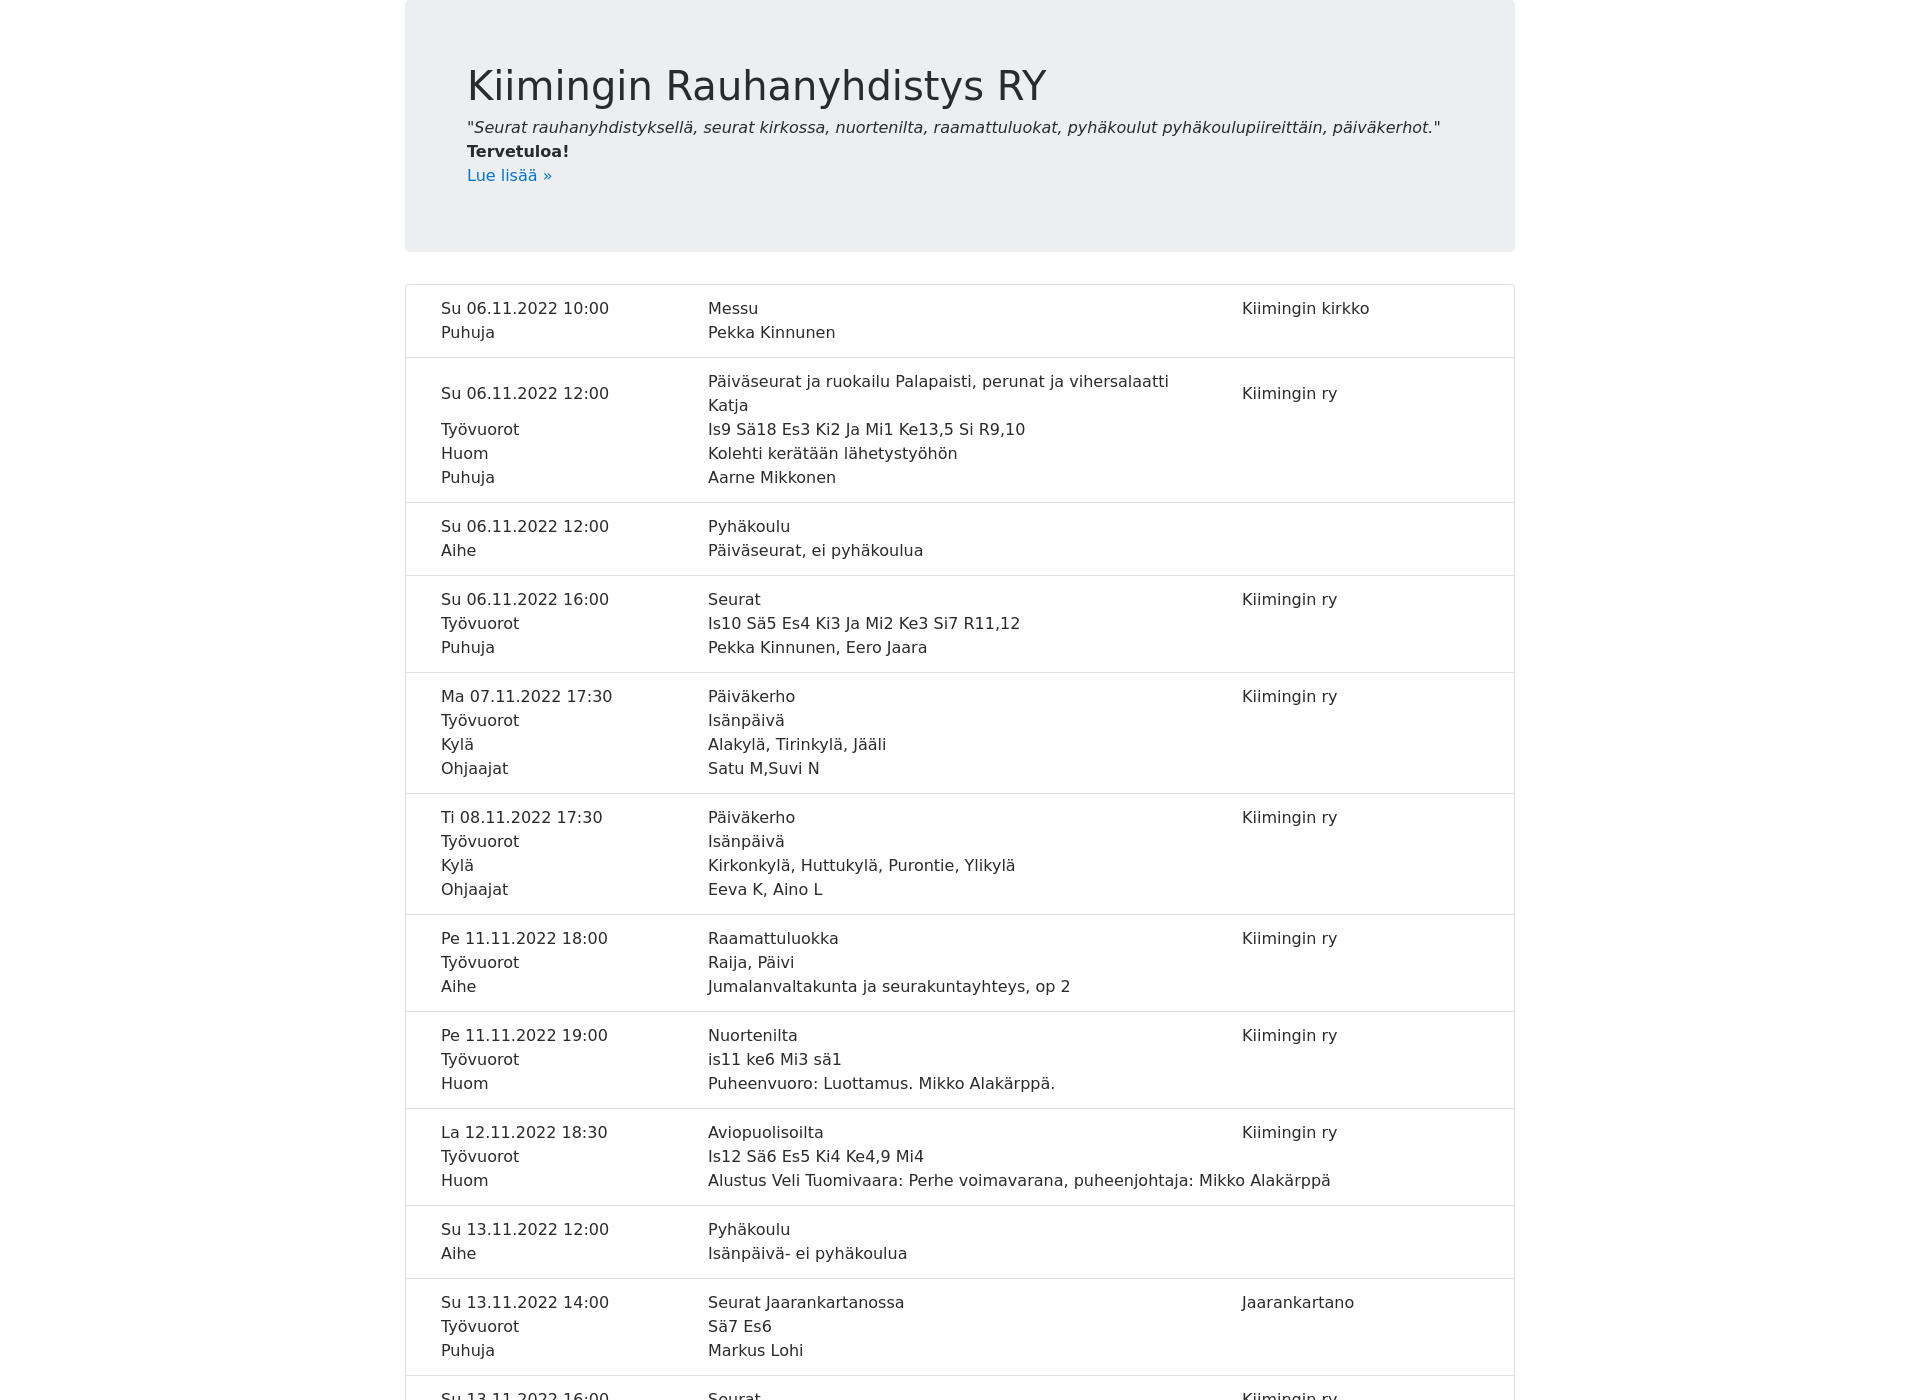 Skärmdump för kiiminginry.fi